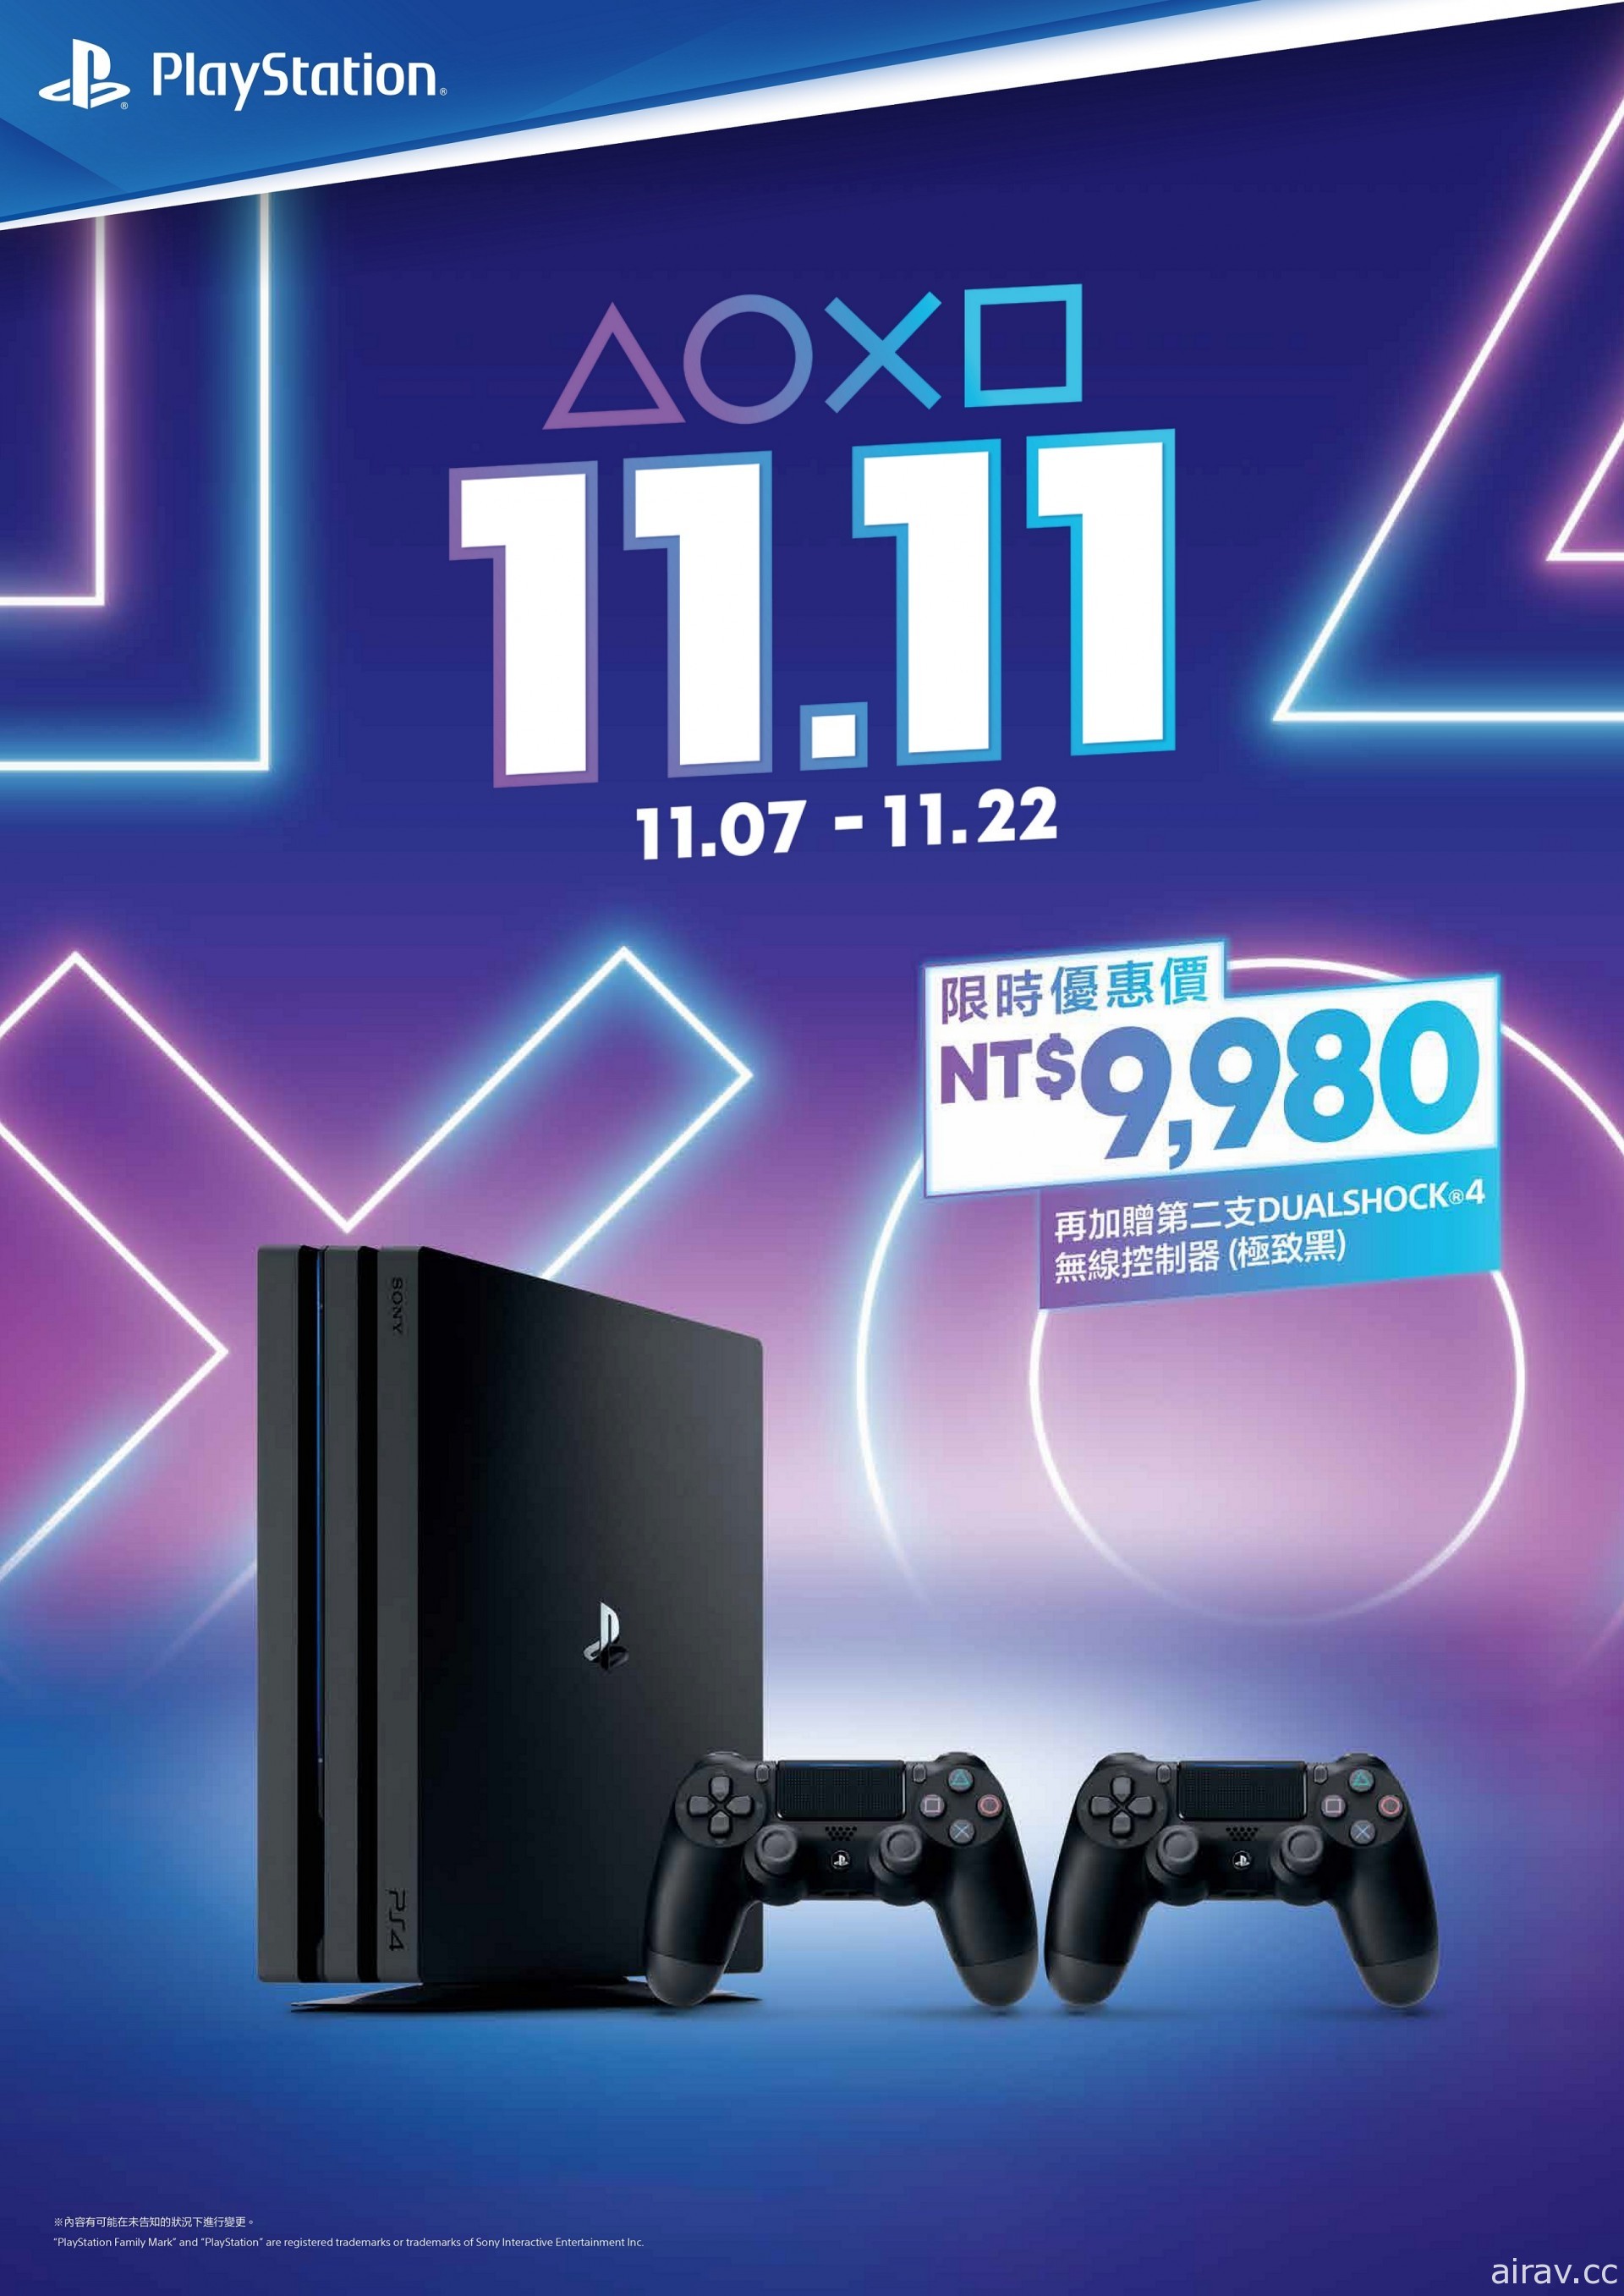 PlayStation 推出 11 月 7 日～22 日期間限定「1111 限時大優惠」